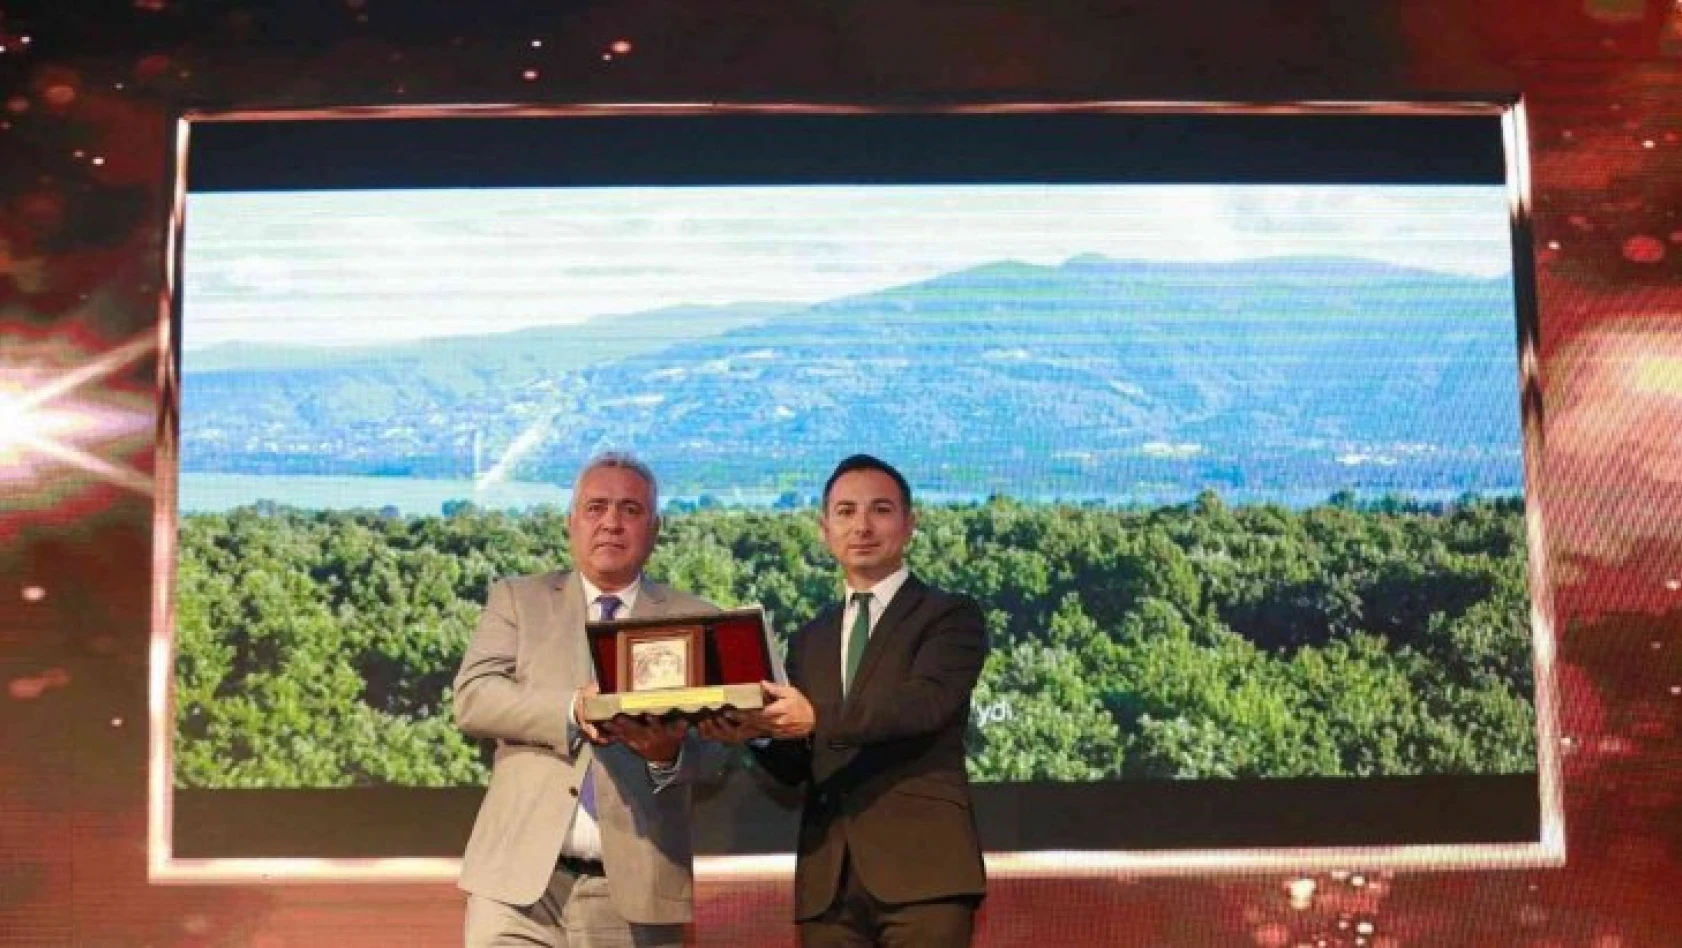 'Show Me Türkiye Kocaeli' en iyi turizm filmi ödülünü aldı